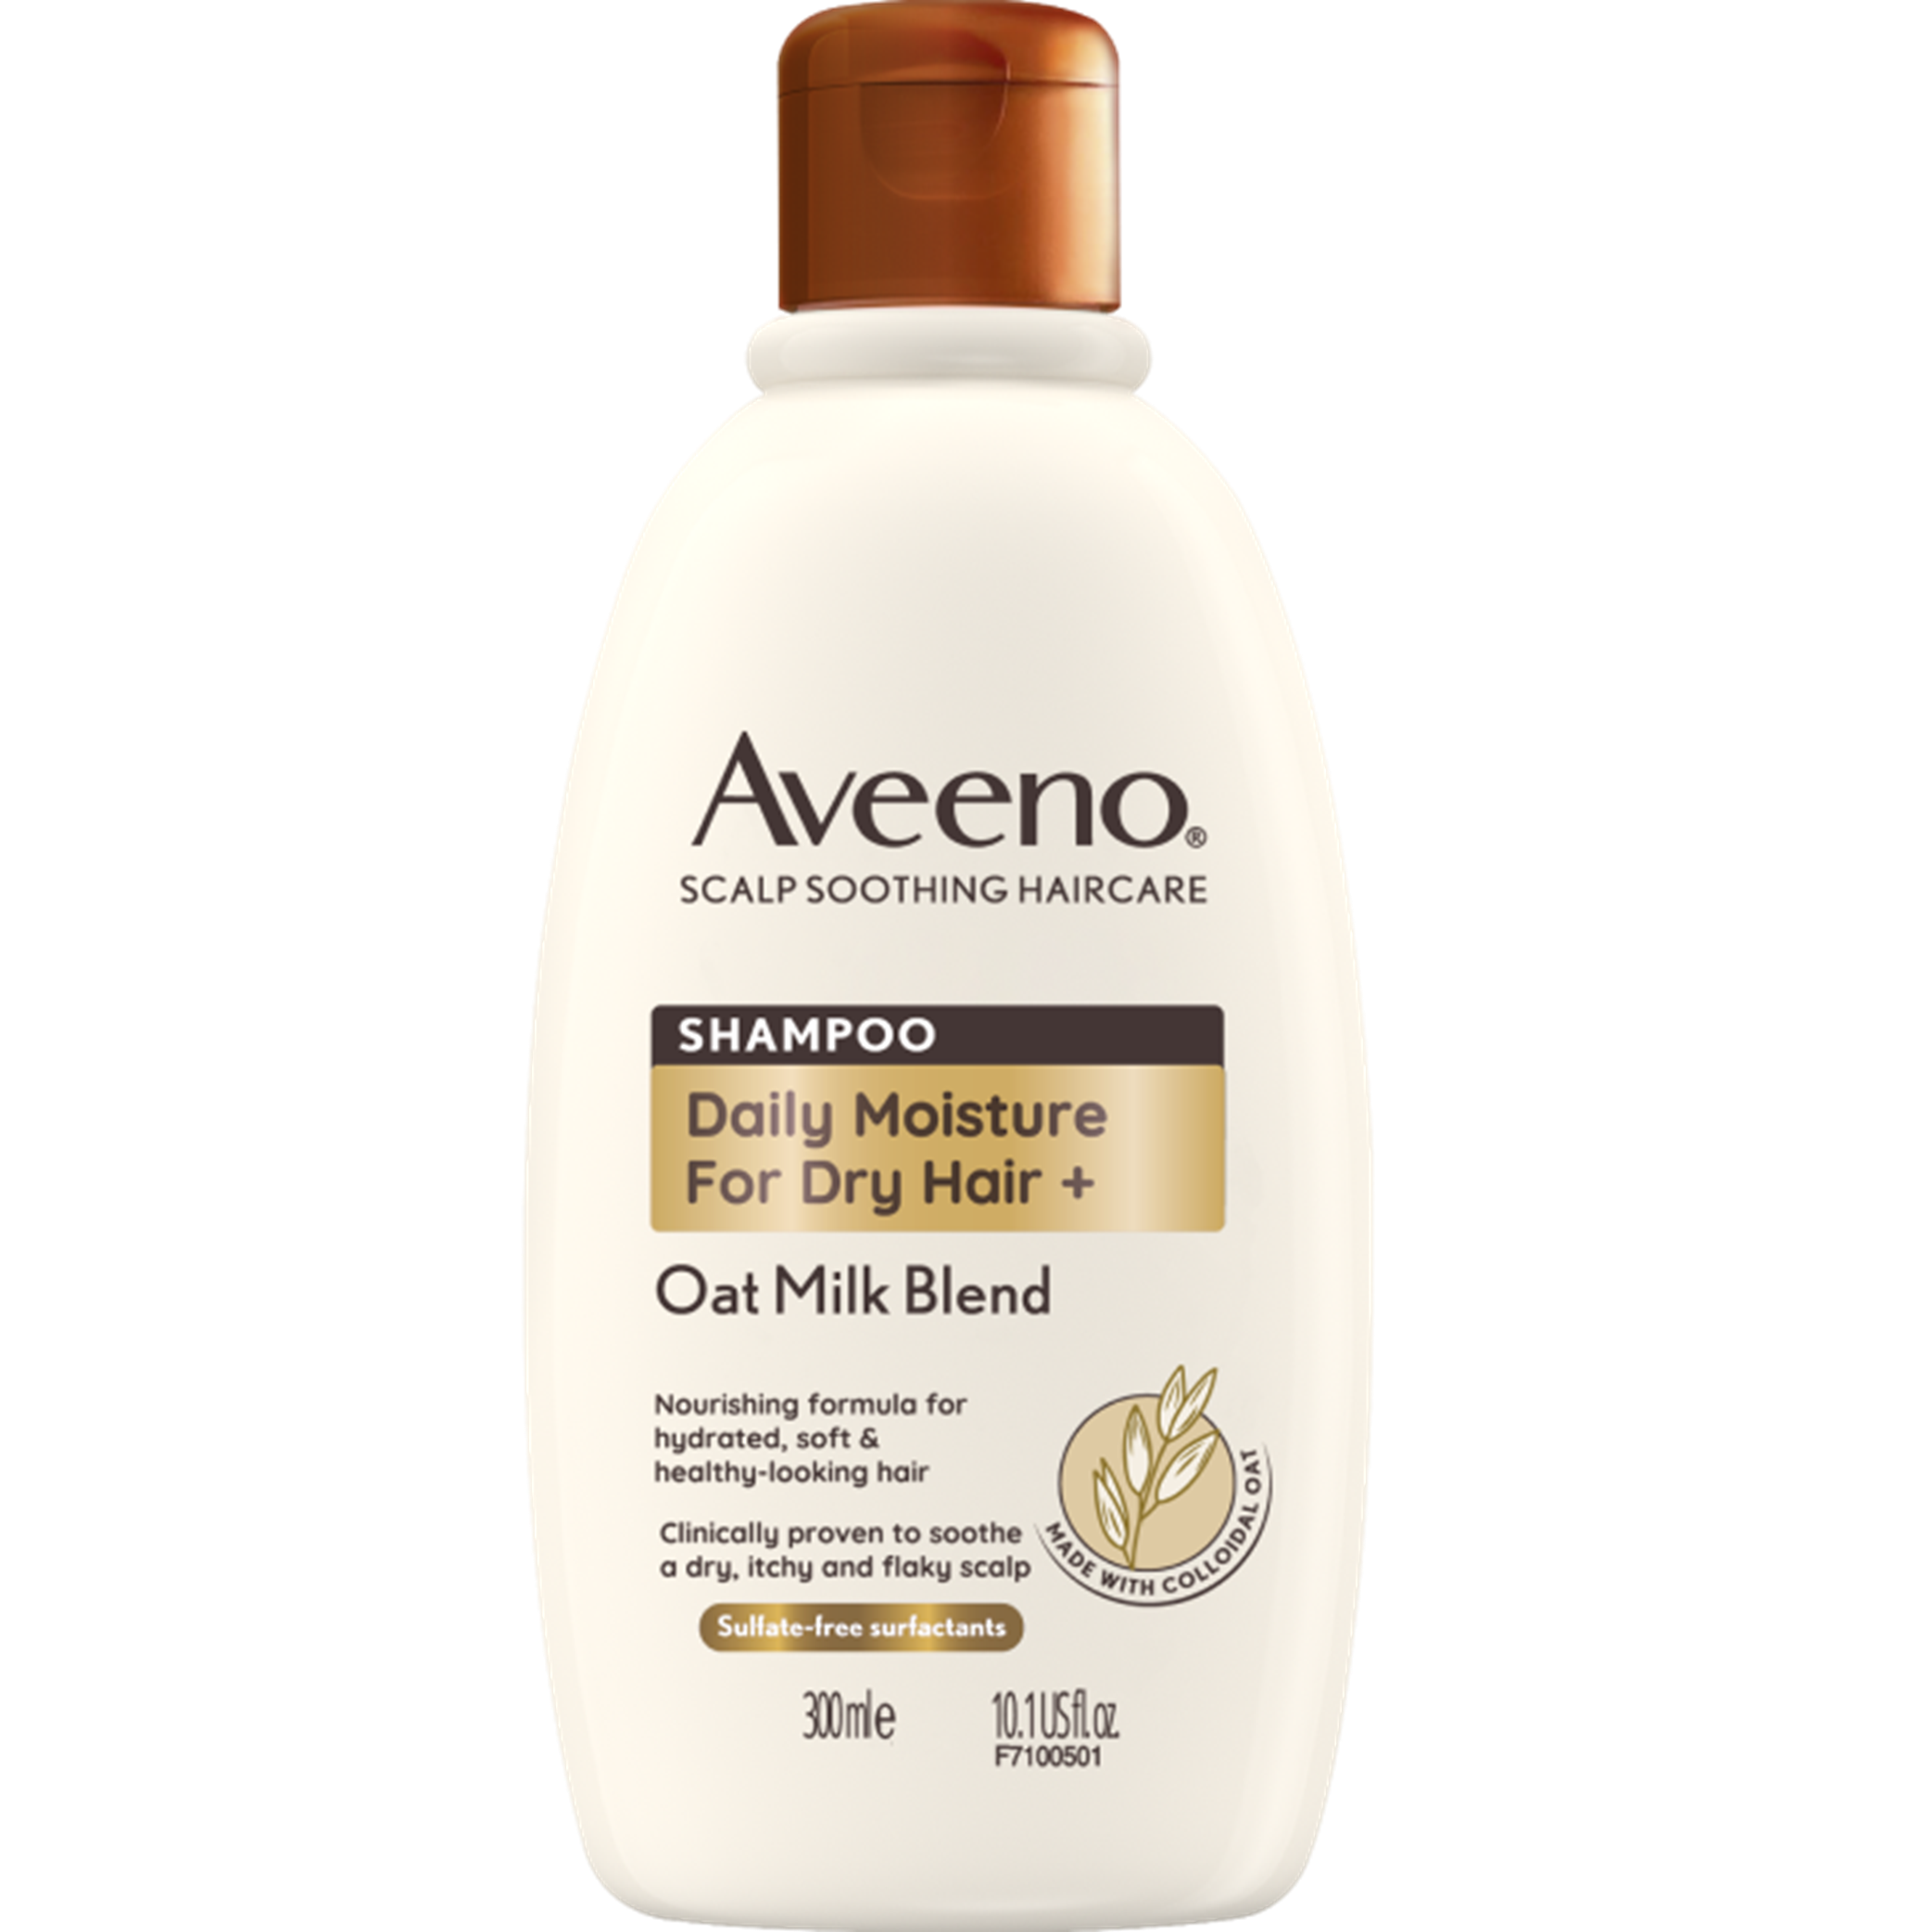 Aveeno Hair Oat Milk Blend Daily Moisture for Dry Hair 